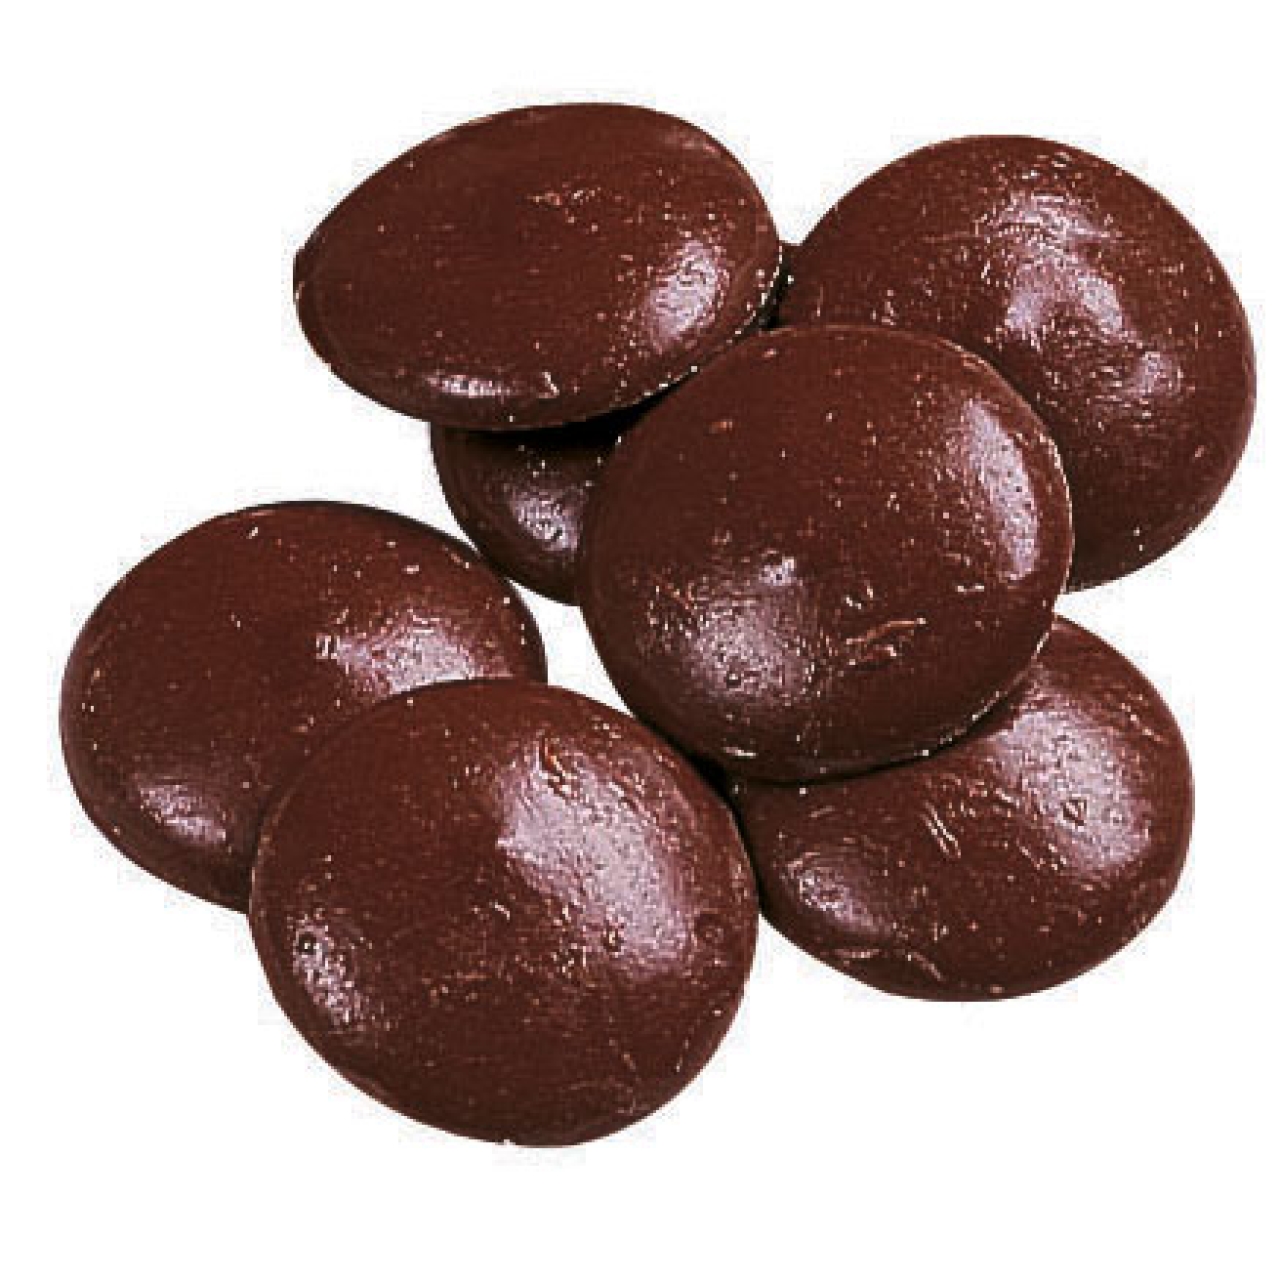 Wilton Candy Melts für Cake-Pops, Cocoa, schoko-braun, 340 g